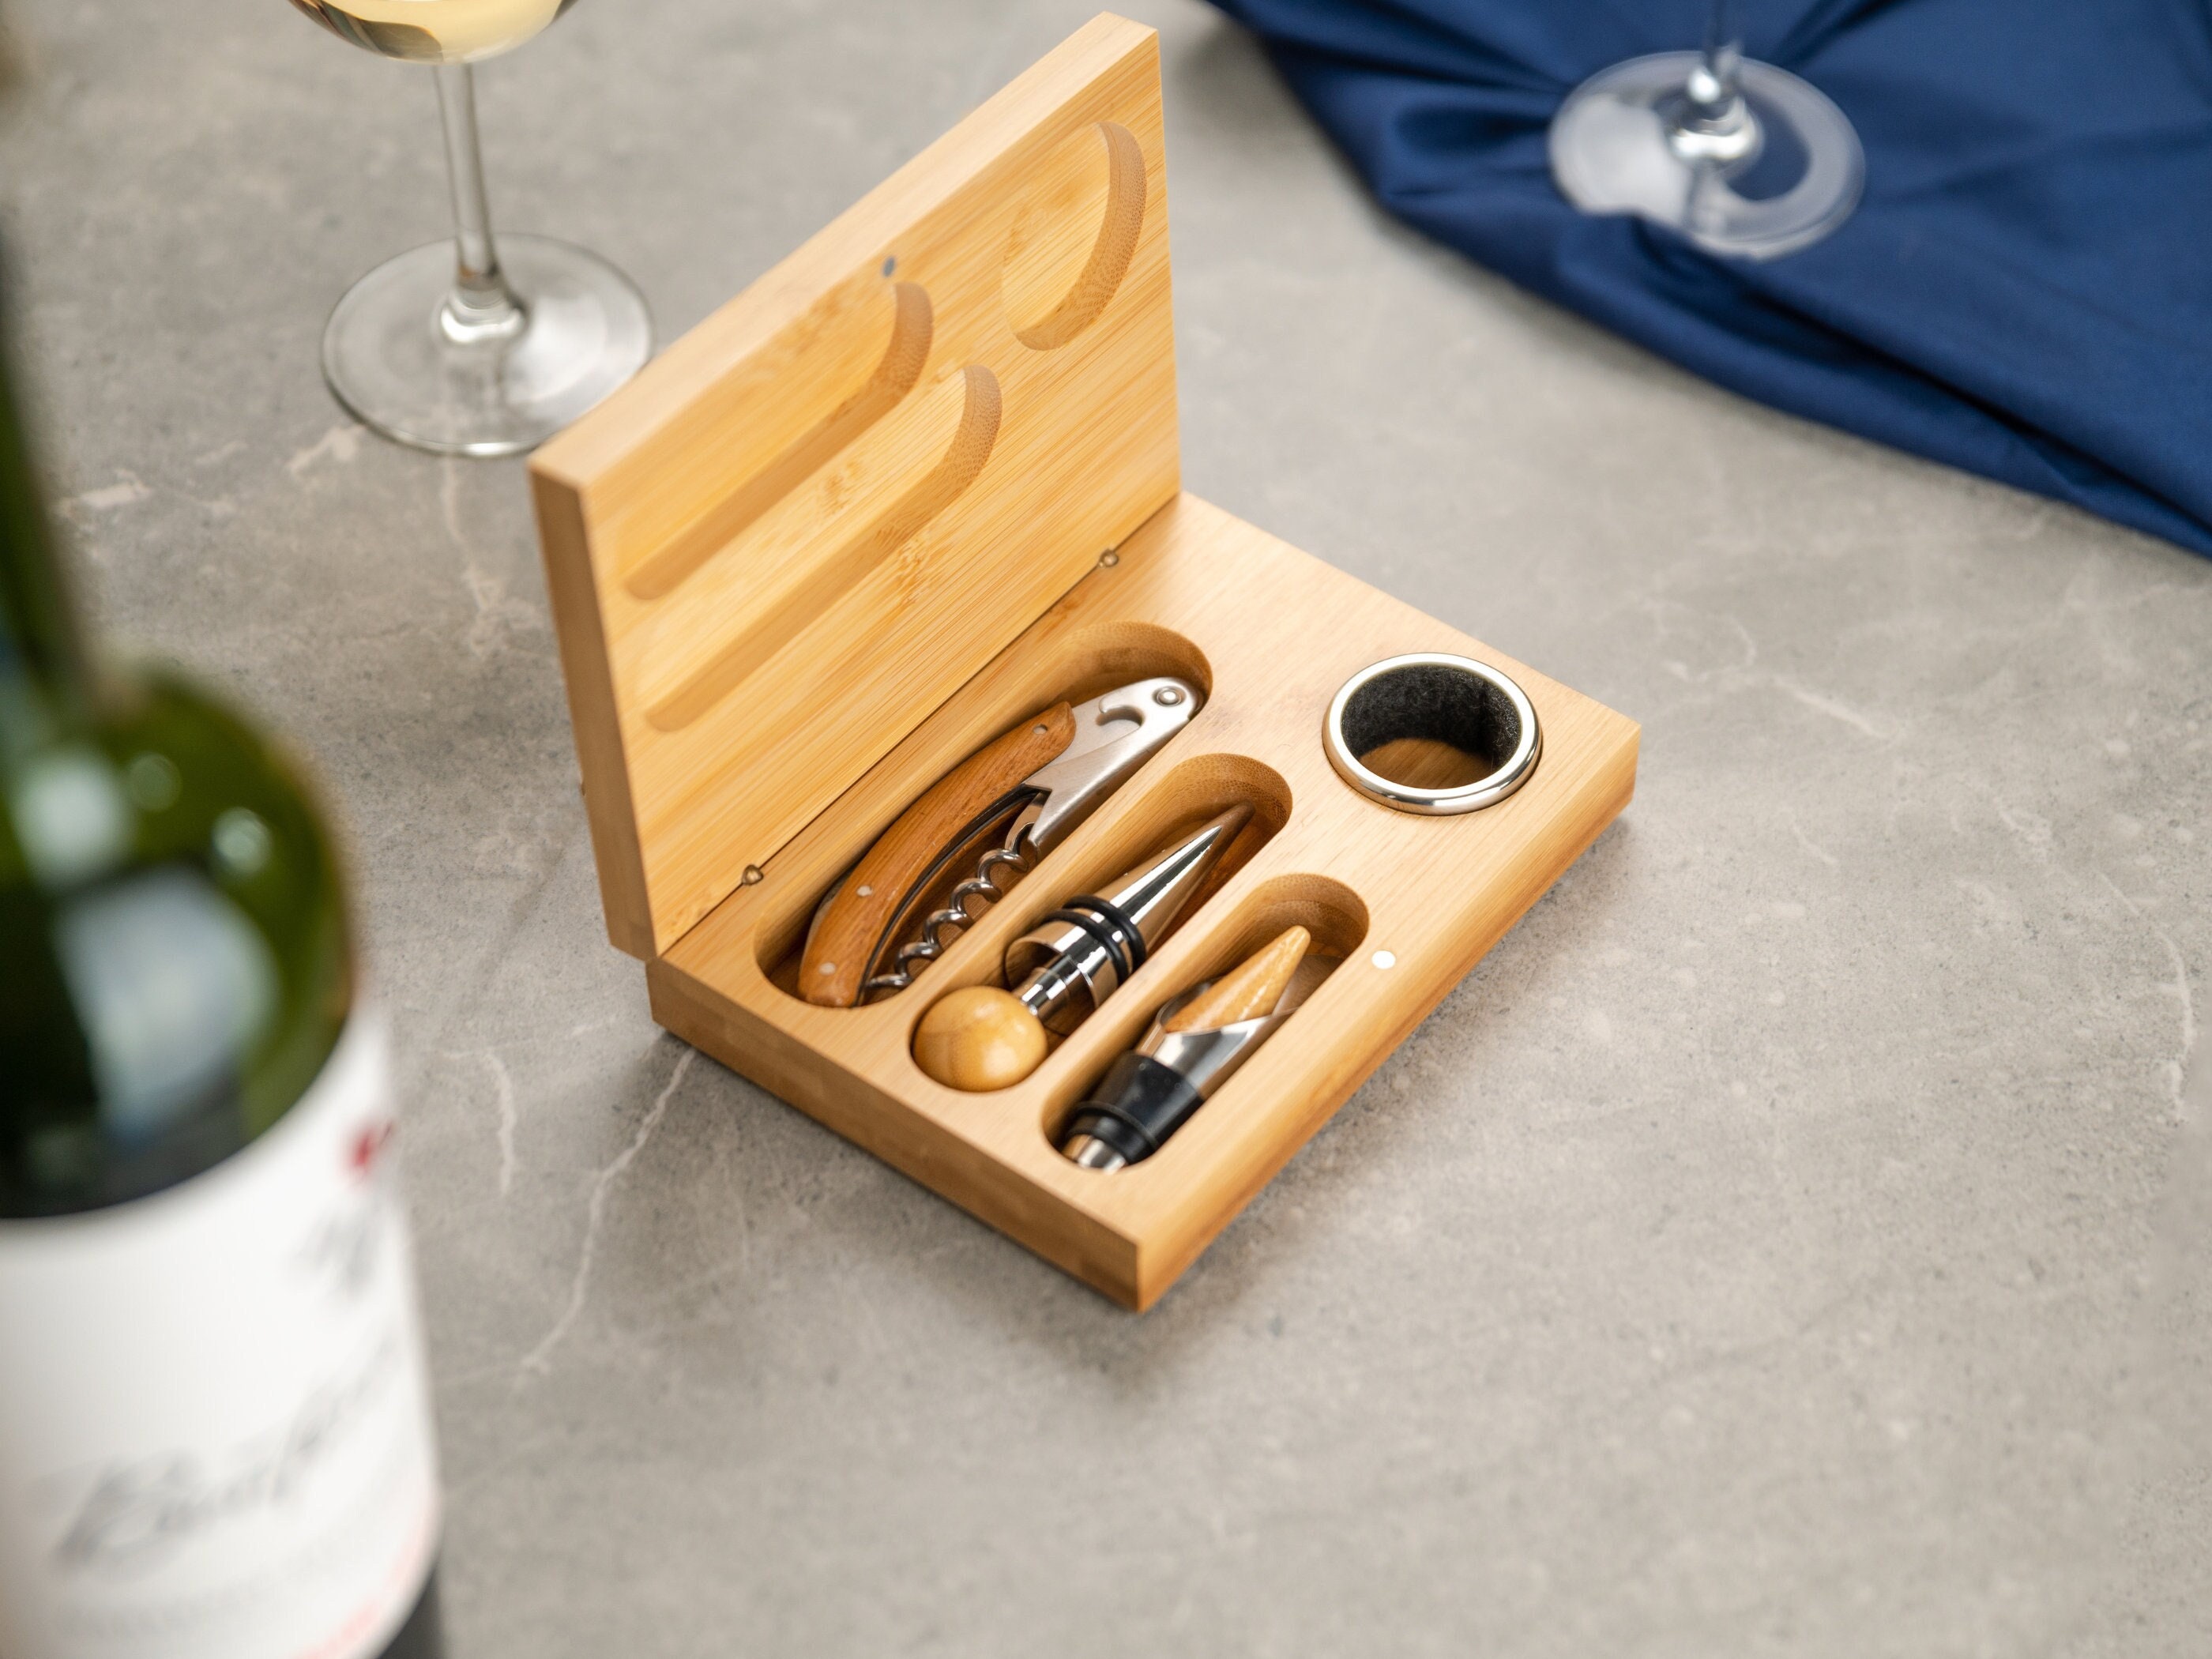 Wine Bottle Opener Set Gift Box – R & B Import